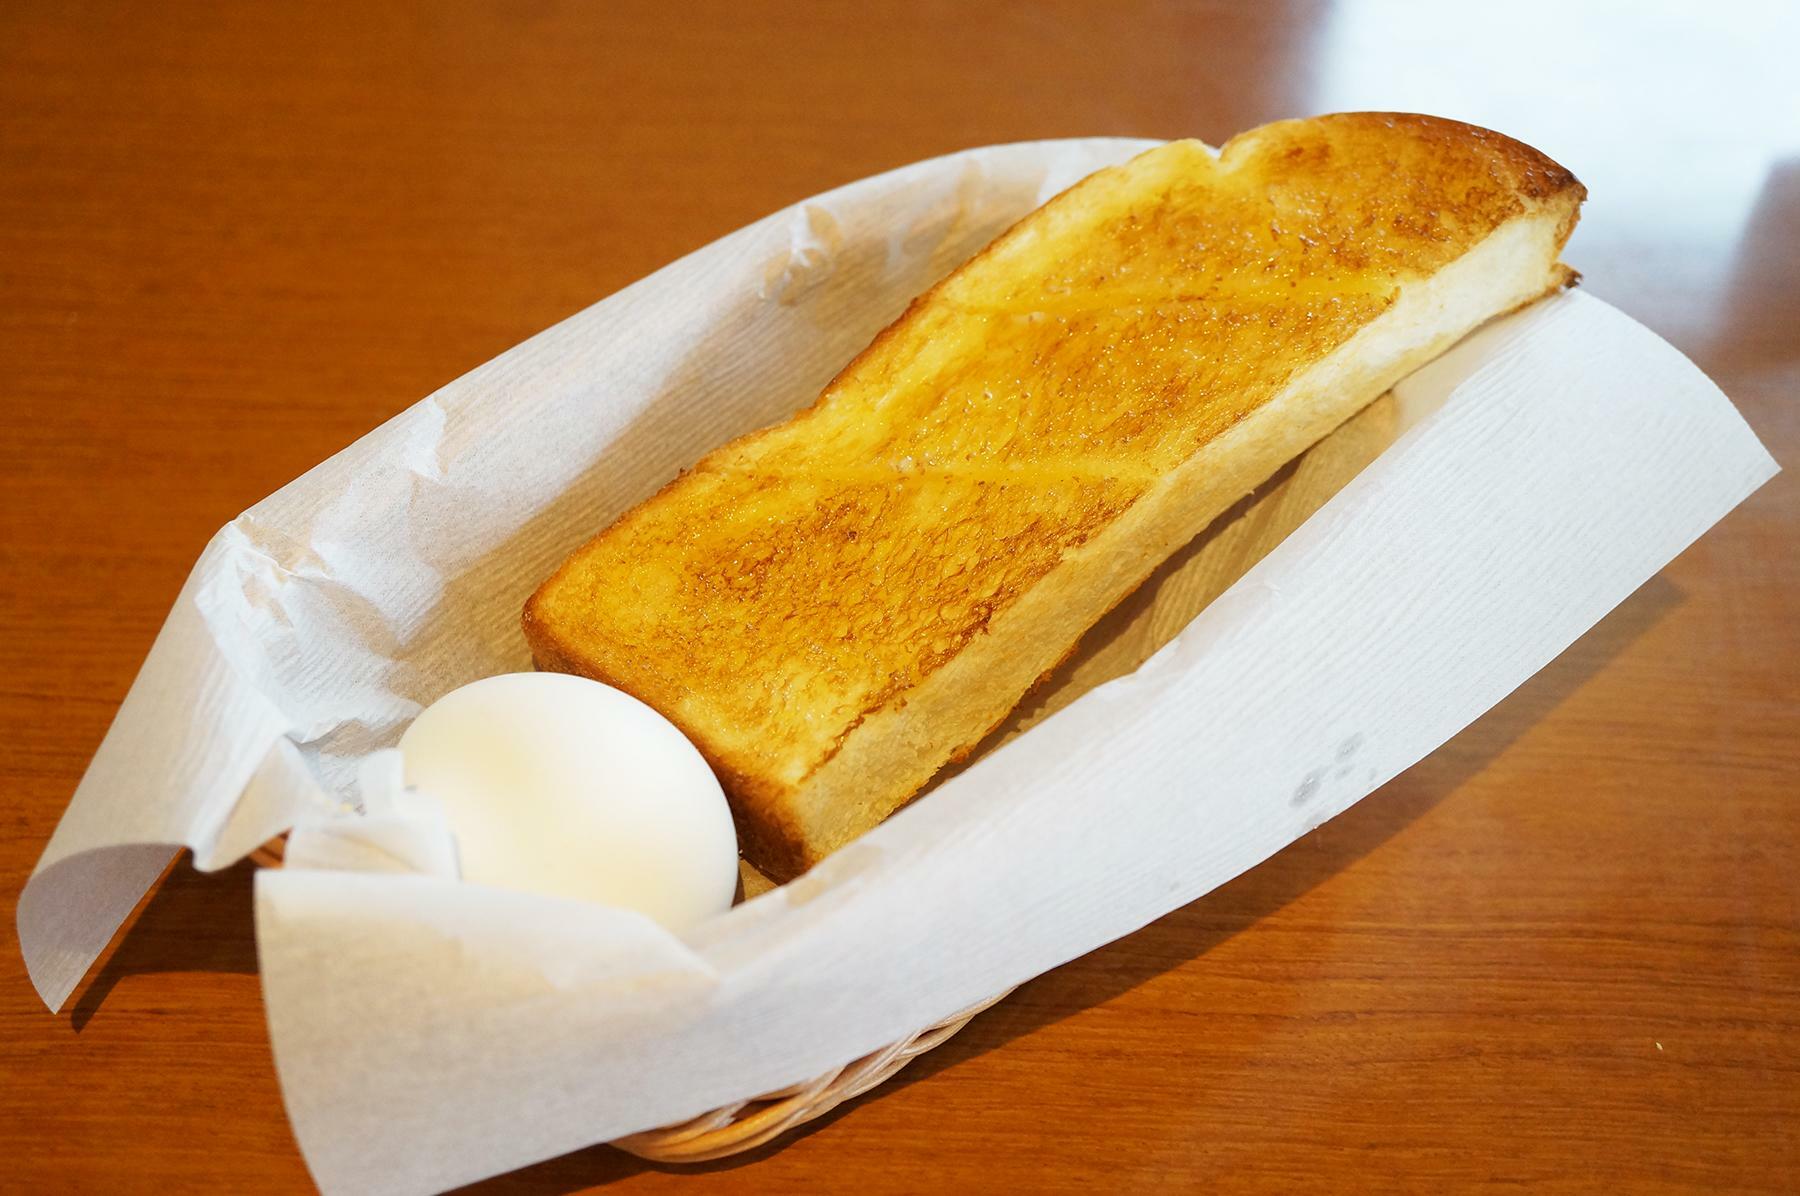 バタートースト　バターがたっぷり塗られており、サクサクで香ばしく美味しいトーストです。